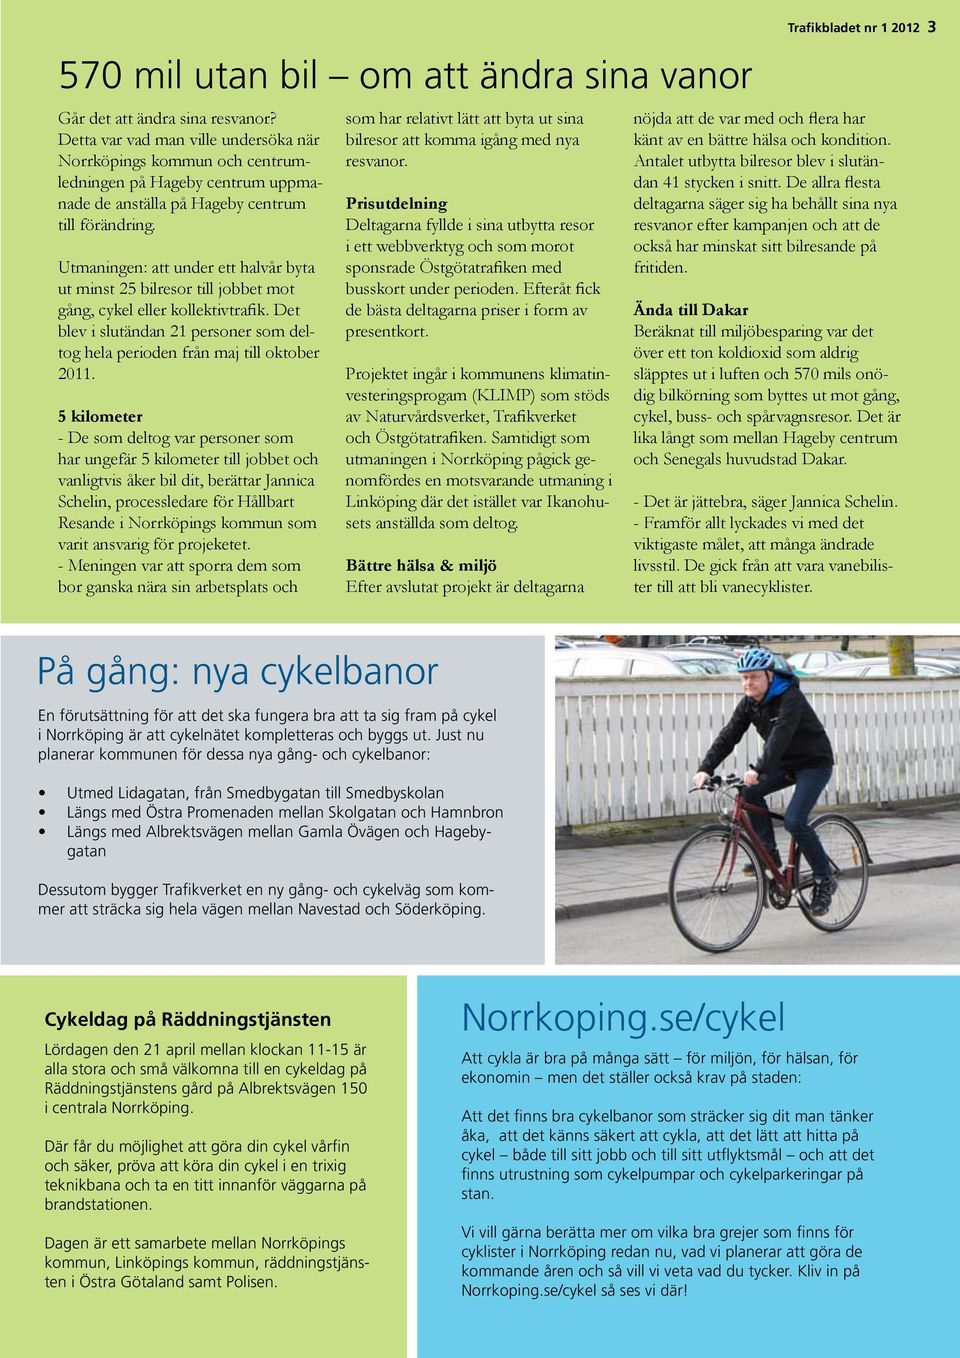 Utmaningen: att under ett halvår byta ut minst 25 bilresor till jobbet mot gång, cykel eller kollektivtrafik. Det blev i slutändan 21 personer som deltog hela perioden från maj till oktober 2011.